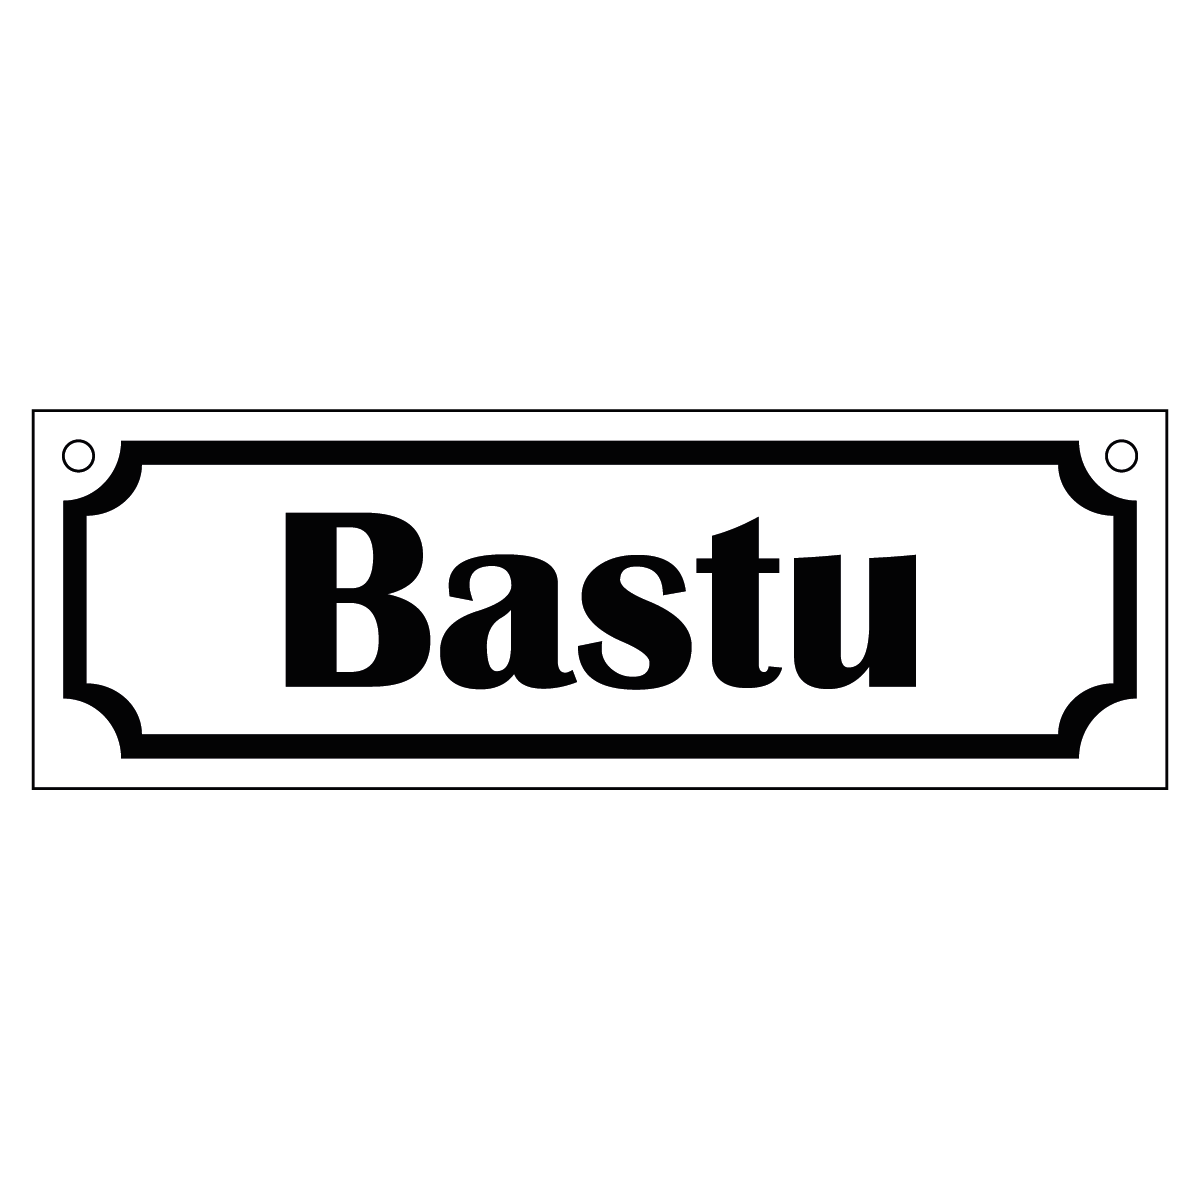 Bastu - Skylt - 150x50mm - Vit - Svart